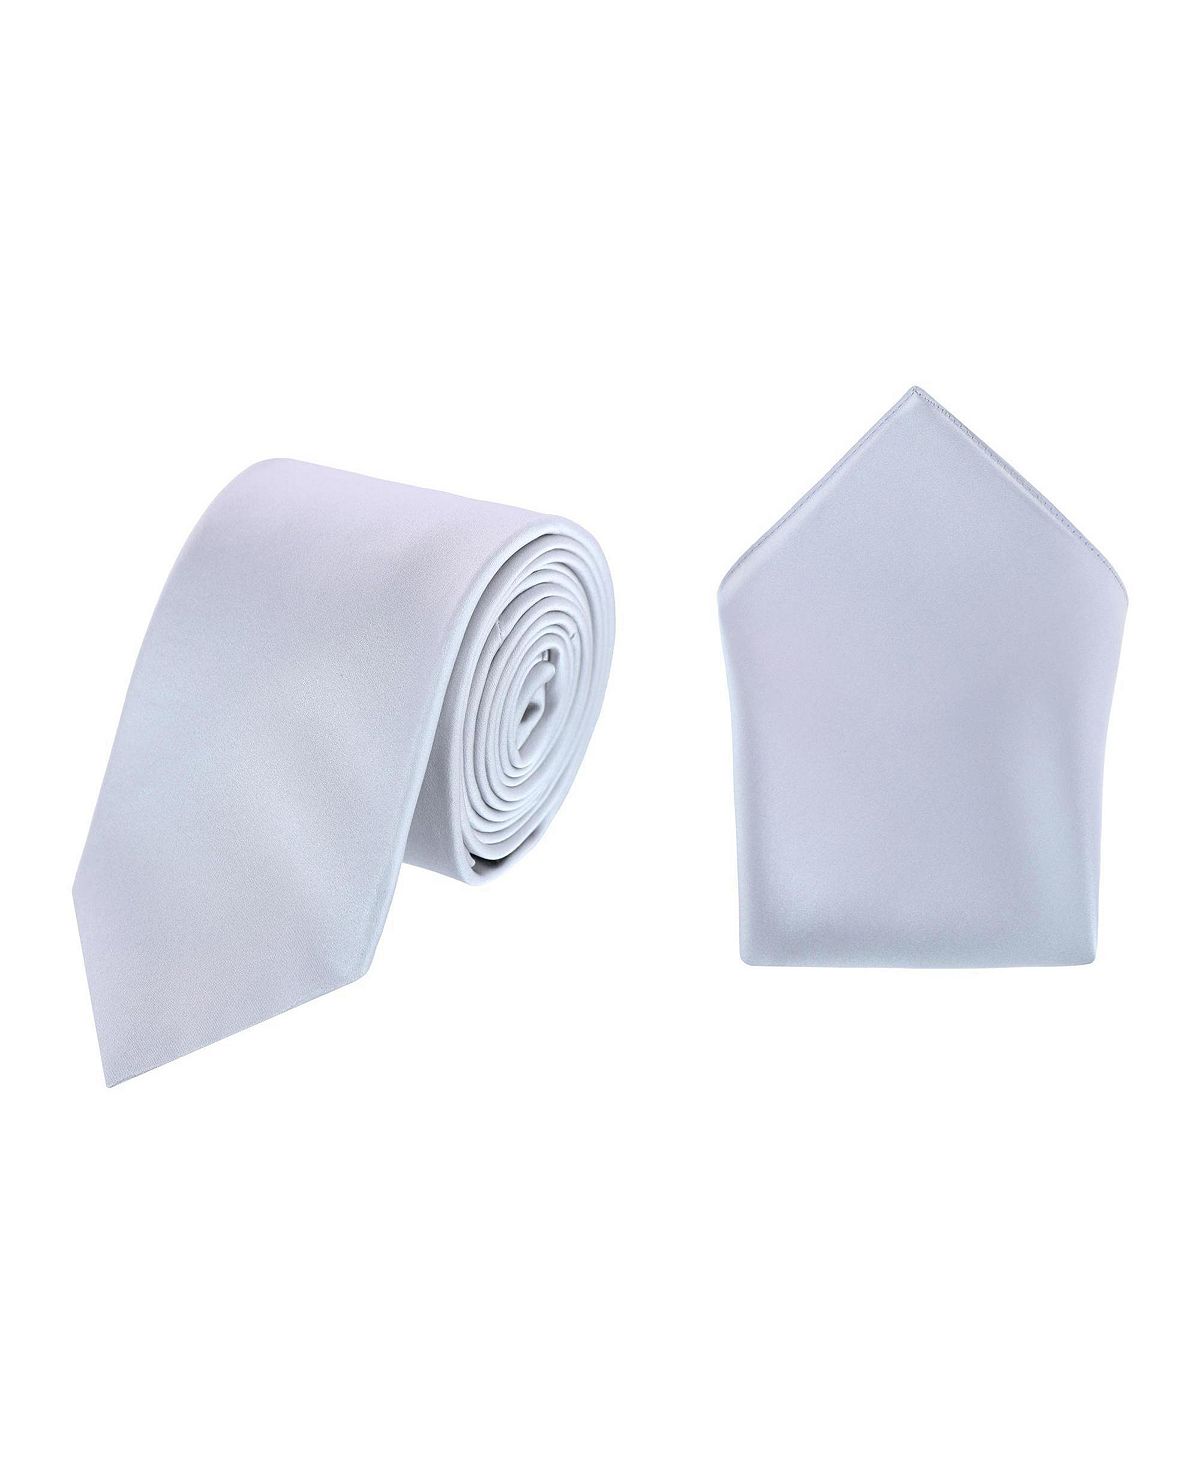 Комбинация однотонного шелкового галстука Sutton и нагрудного платка TRAFALGAR